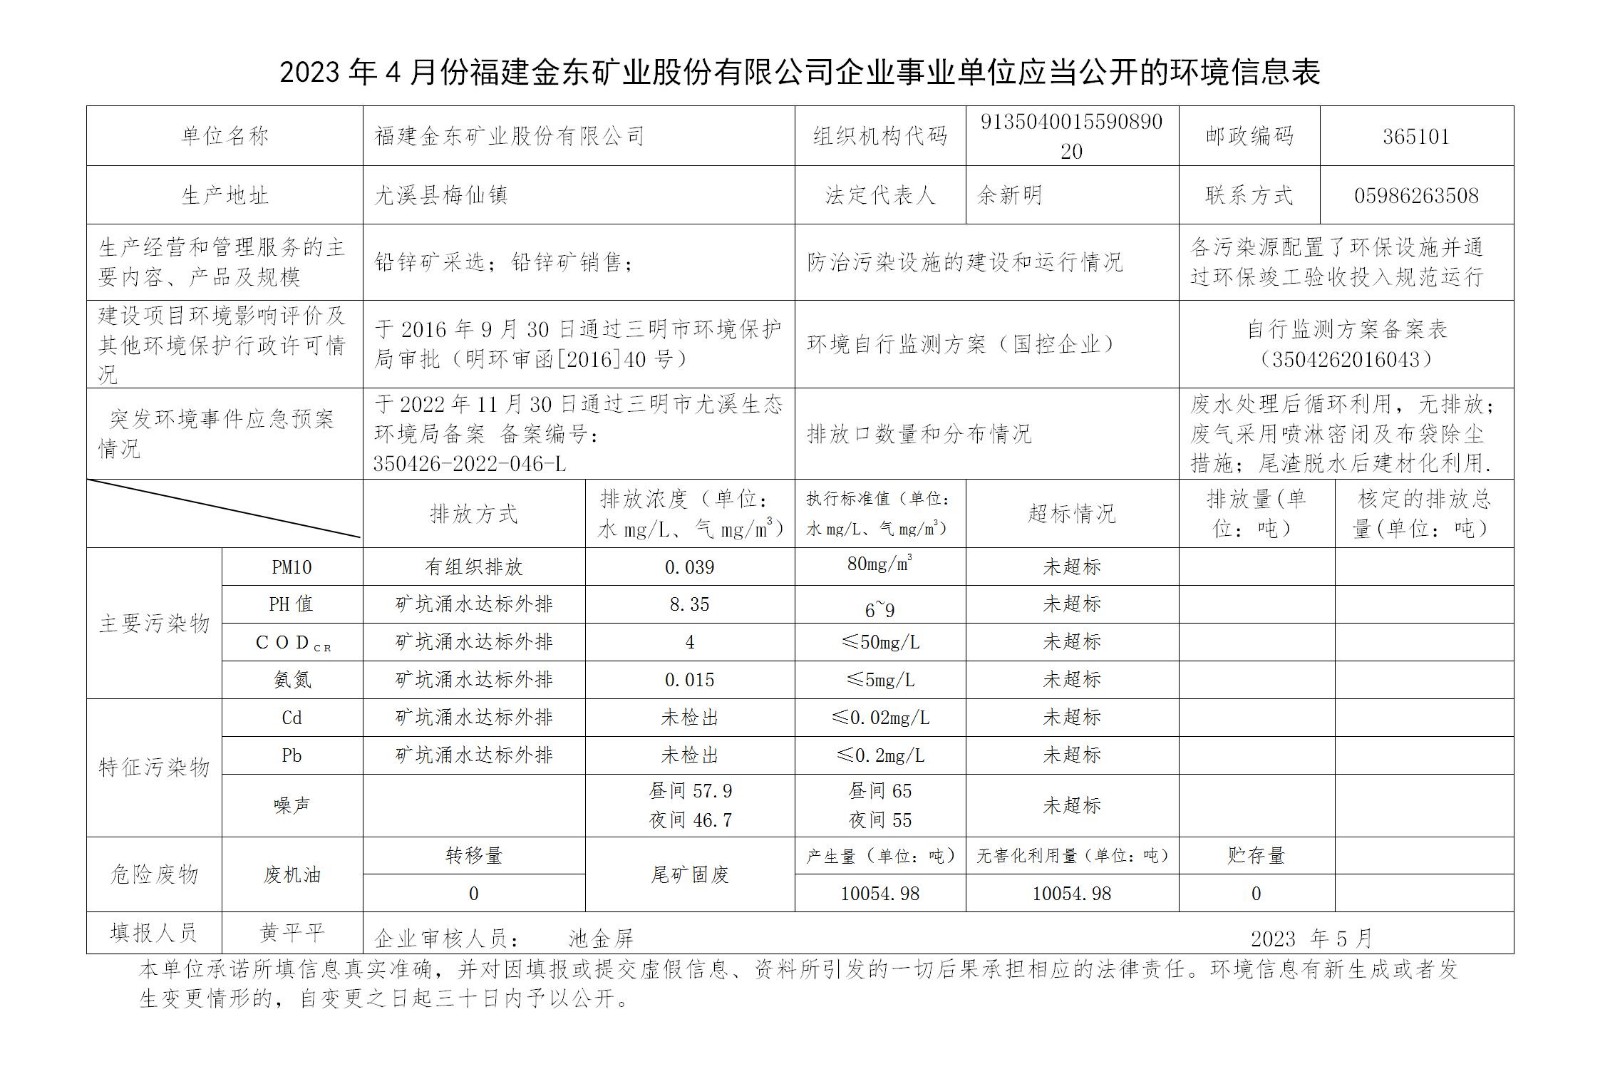 2023年4月份篮球下注APP官方网站(中国)有限公司企业事业单位应当公开的环境信息表_01.jpg